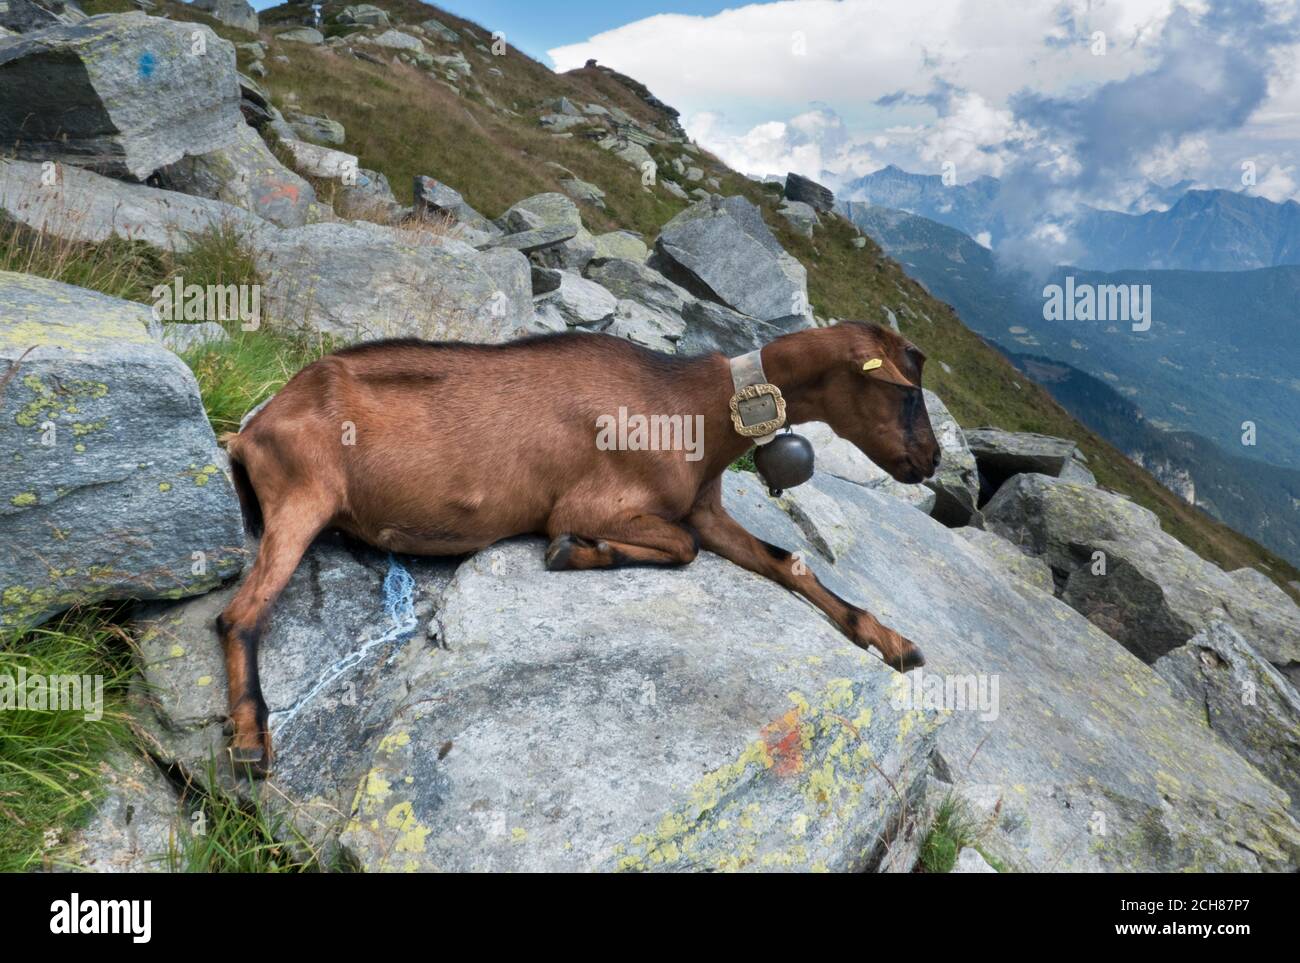 Cabra hembra marrón con una campana, descansando en una roca, la leche goteando de su ubre Foto de stock